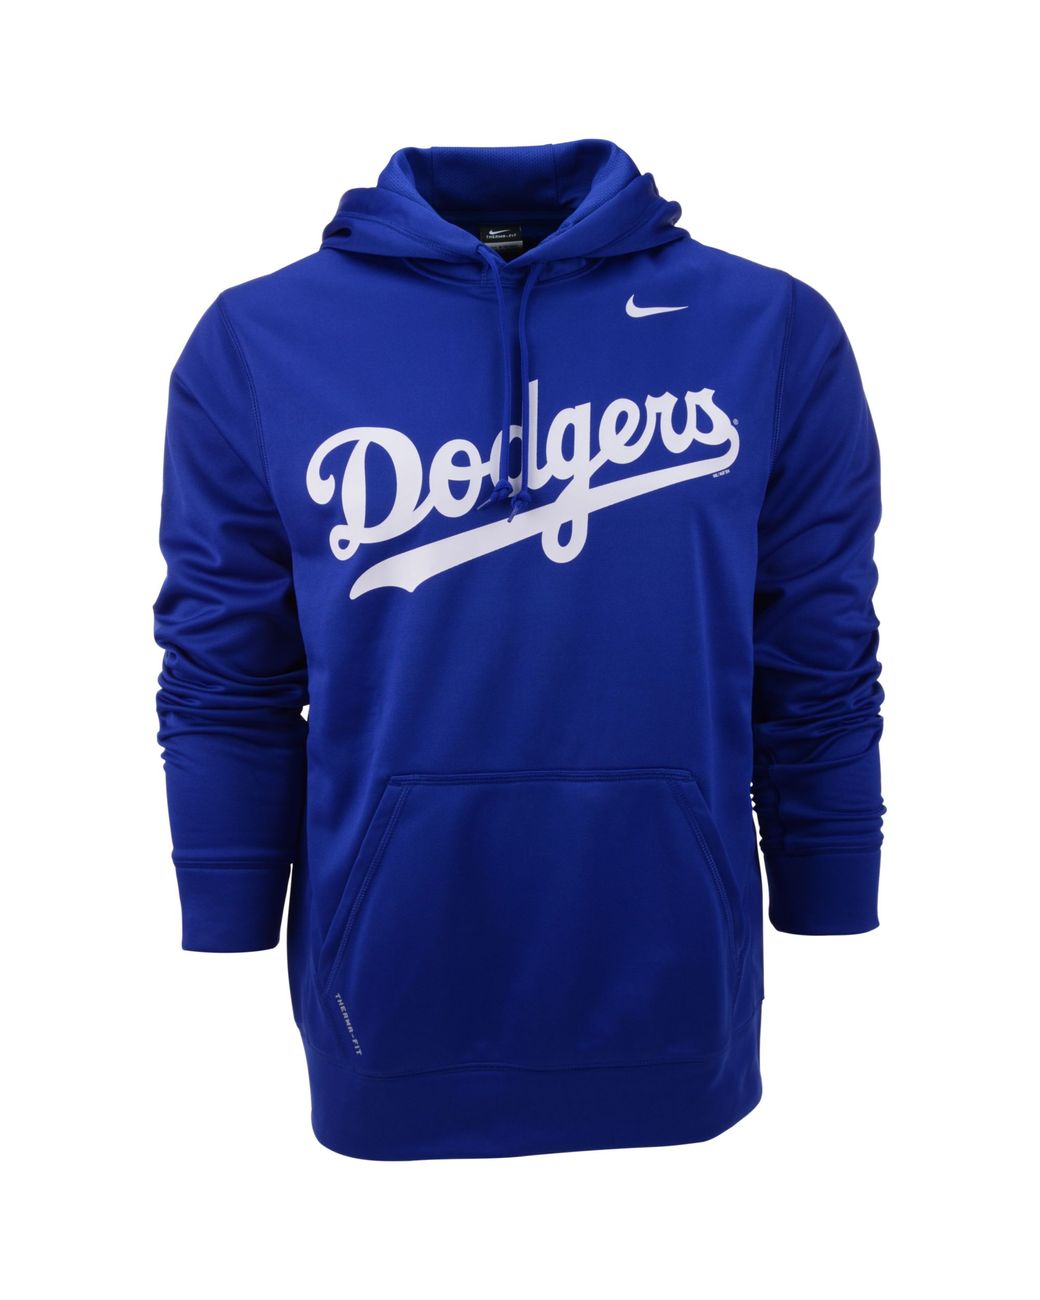 Dodgers Sweatshirt for Men 